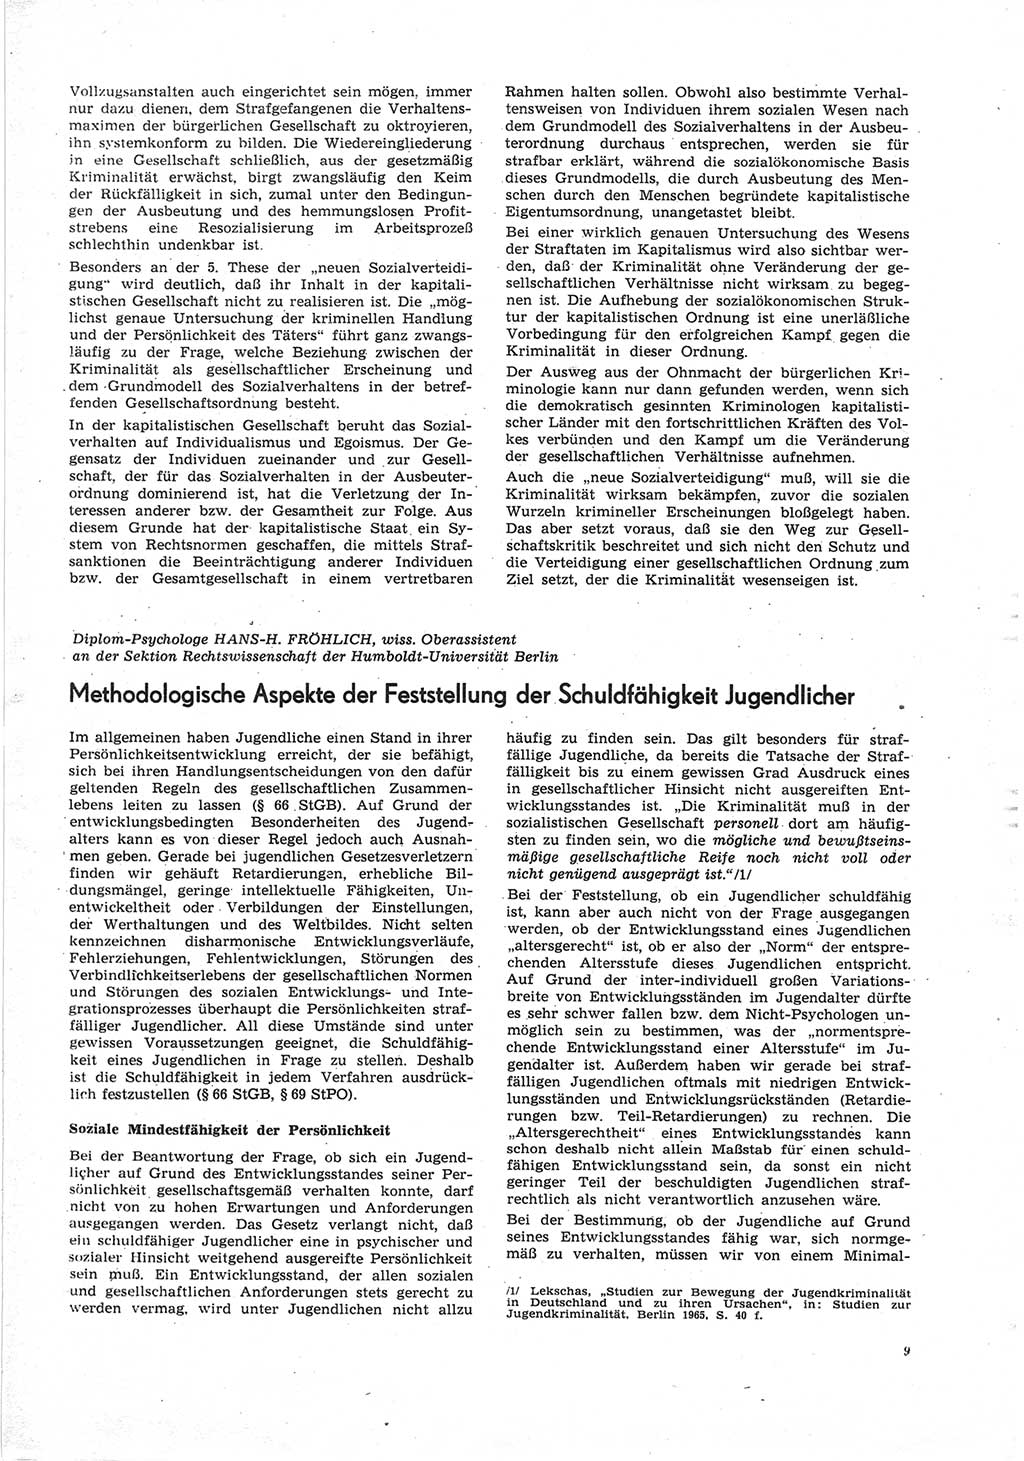 Neue Justiz (NJ), Zeitschrift für Recht und Rechtswissenschaft [Deutsche Demokratische Republik (DDR)], 25. Jahrgang 1971, Seite 9 (NJ DDR 1971, S. 9)